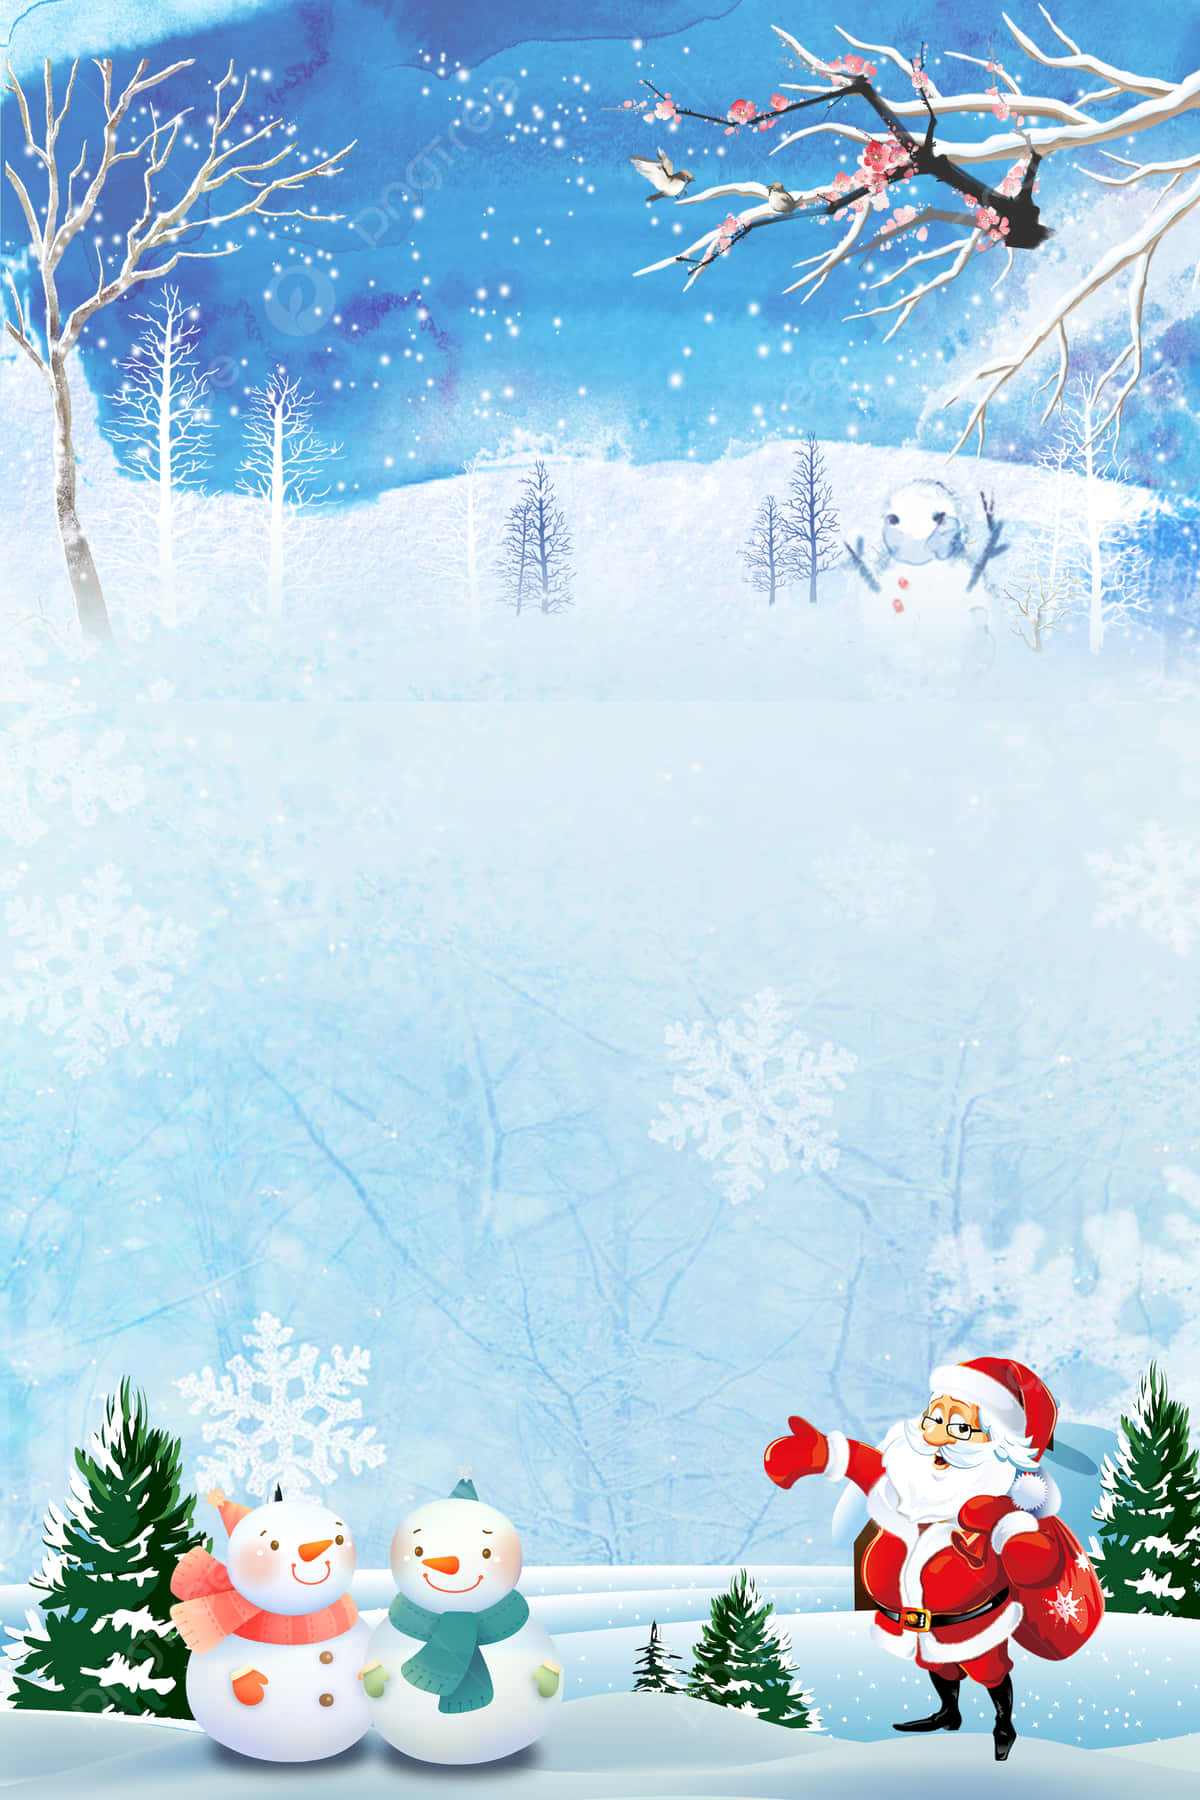 Pupazzidi Neve Vicini A Babbo Natale Sulla Neve: Sfondo Di Arte Digitale Per Natale.